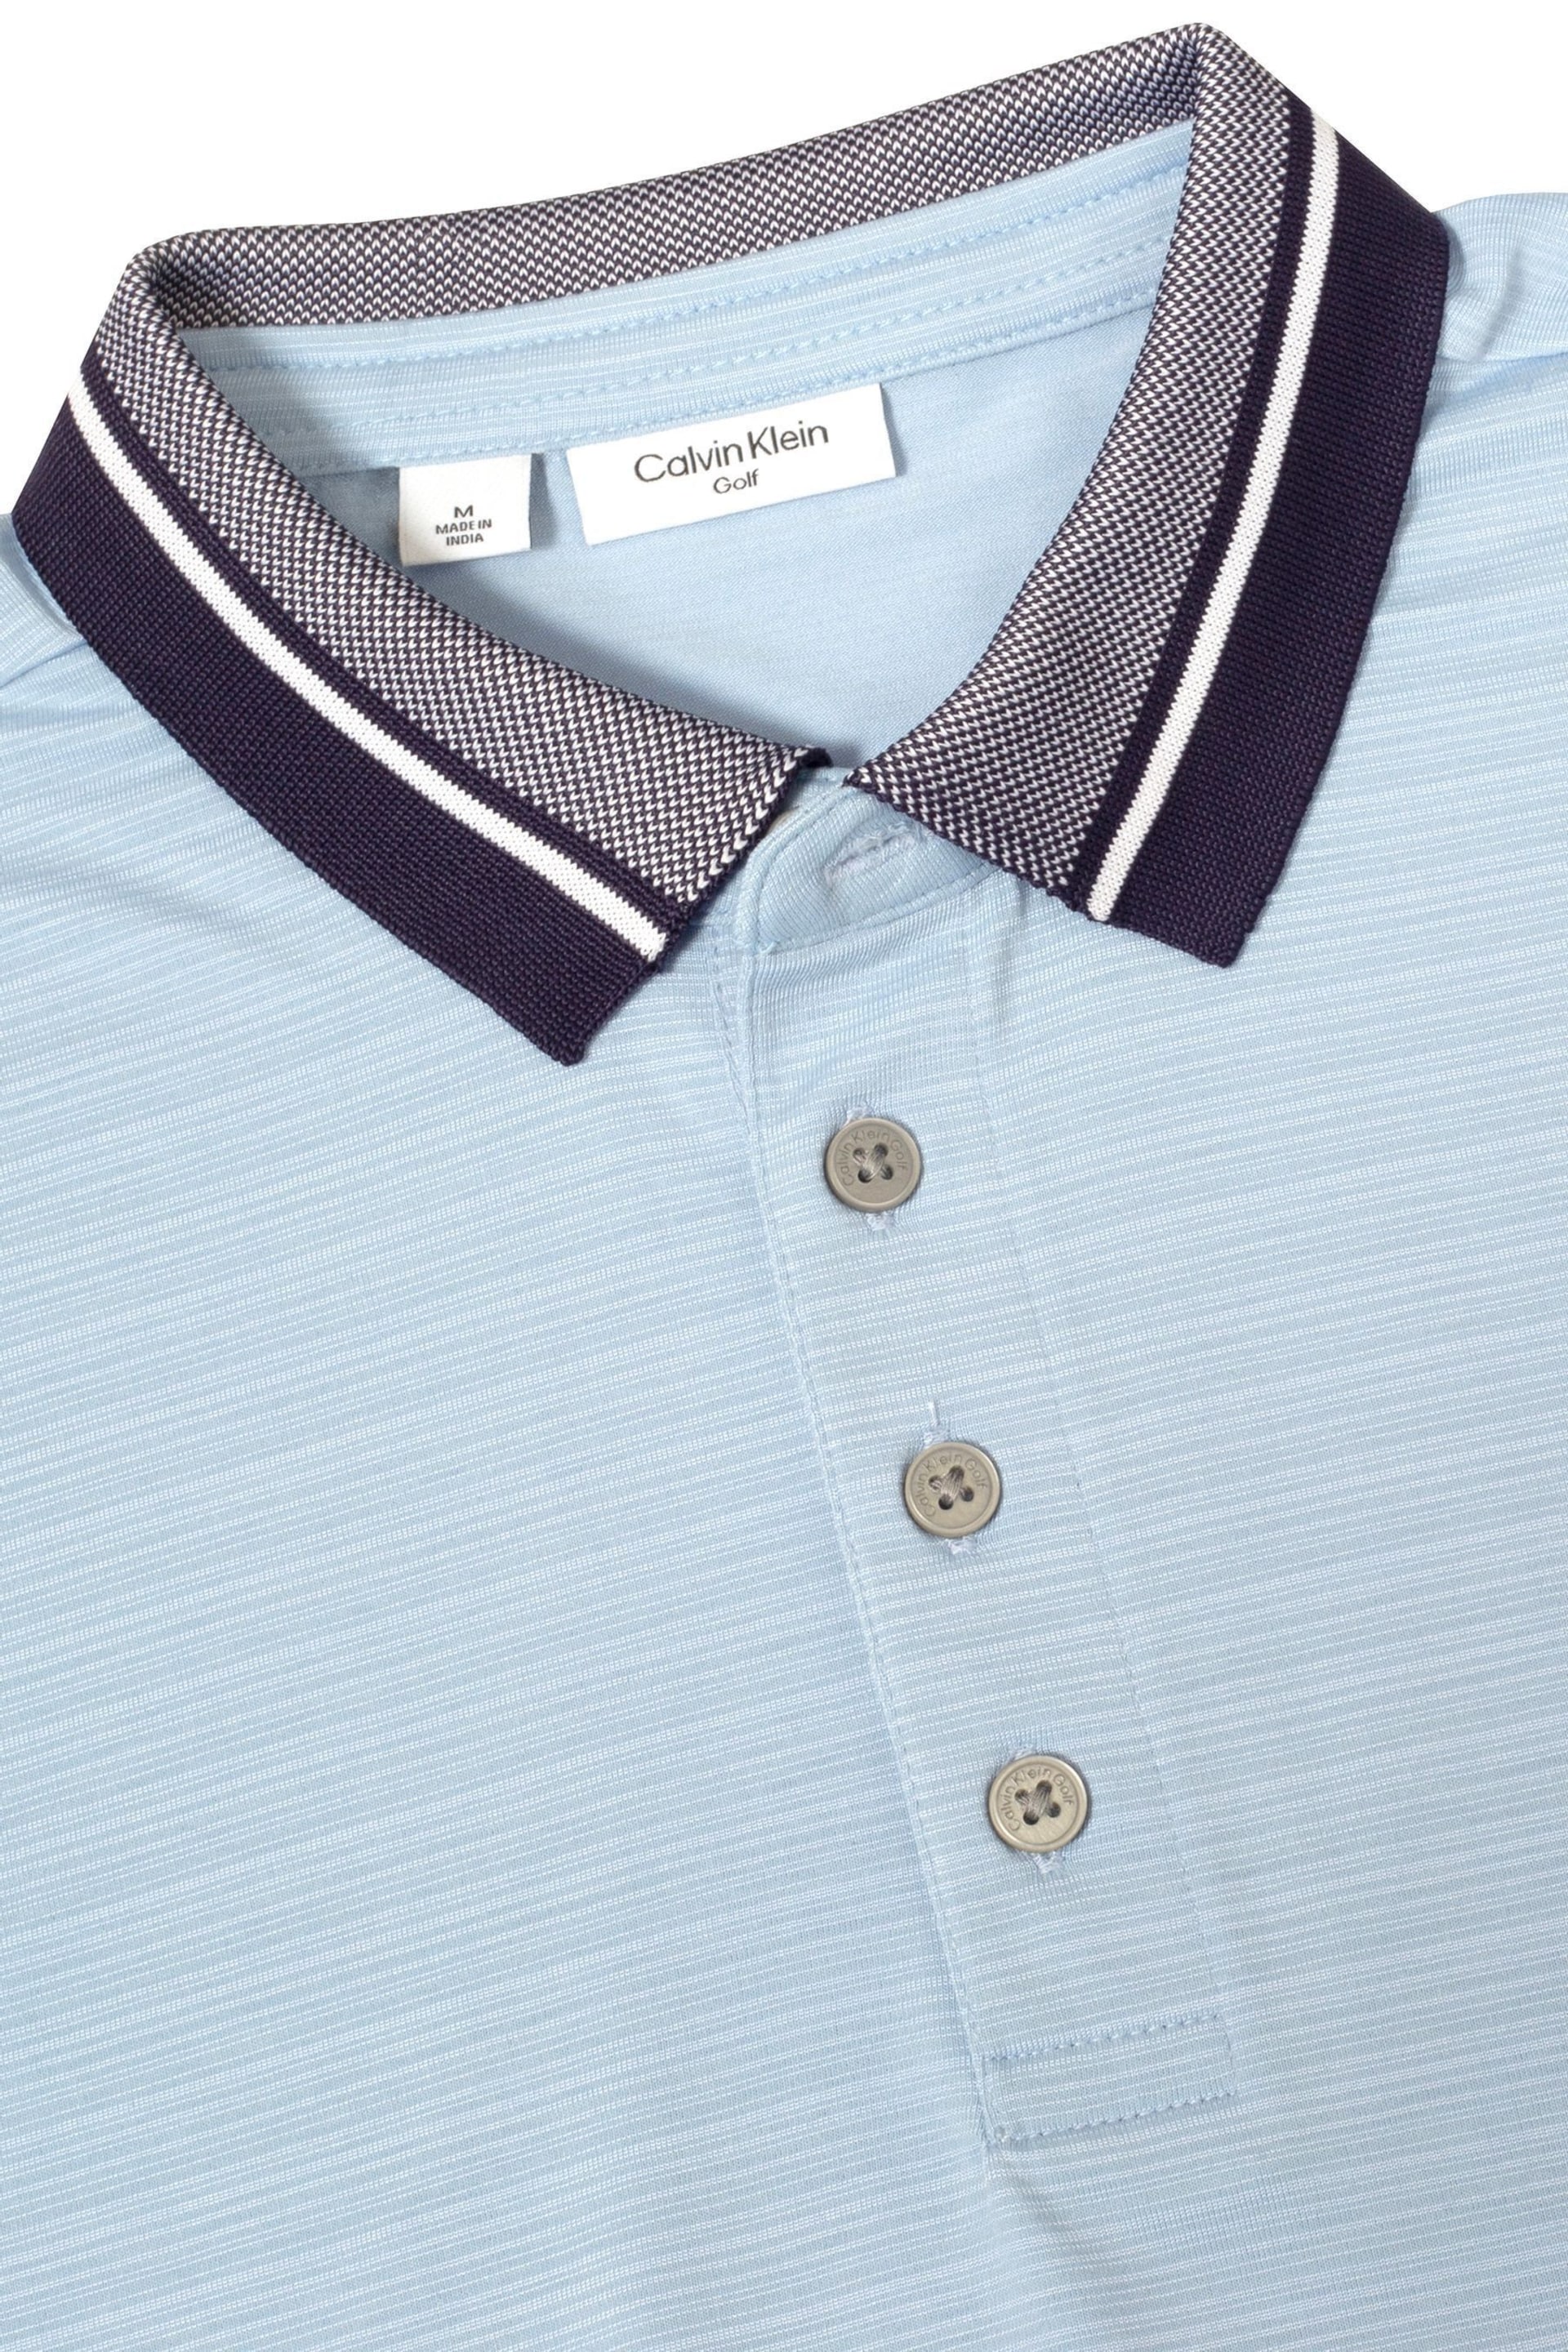 Calvin Klein Golf Navy Parramore Polo Shirt - Image 8 of 8